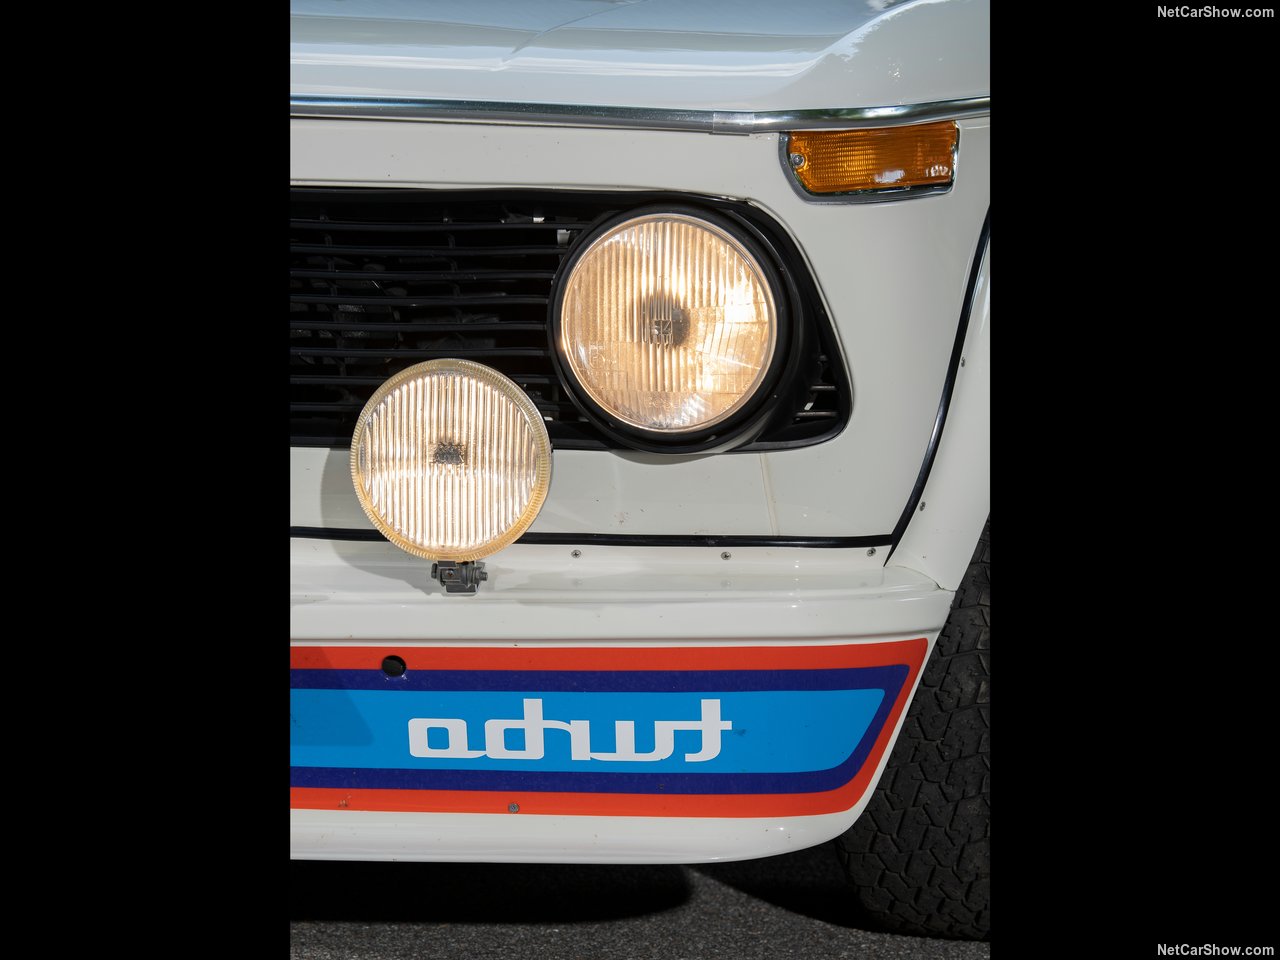 BMW 2002 Turbo 1973 BMW-2002_turbo-1973-1280-72